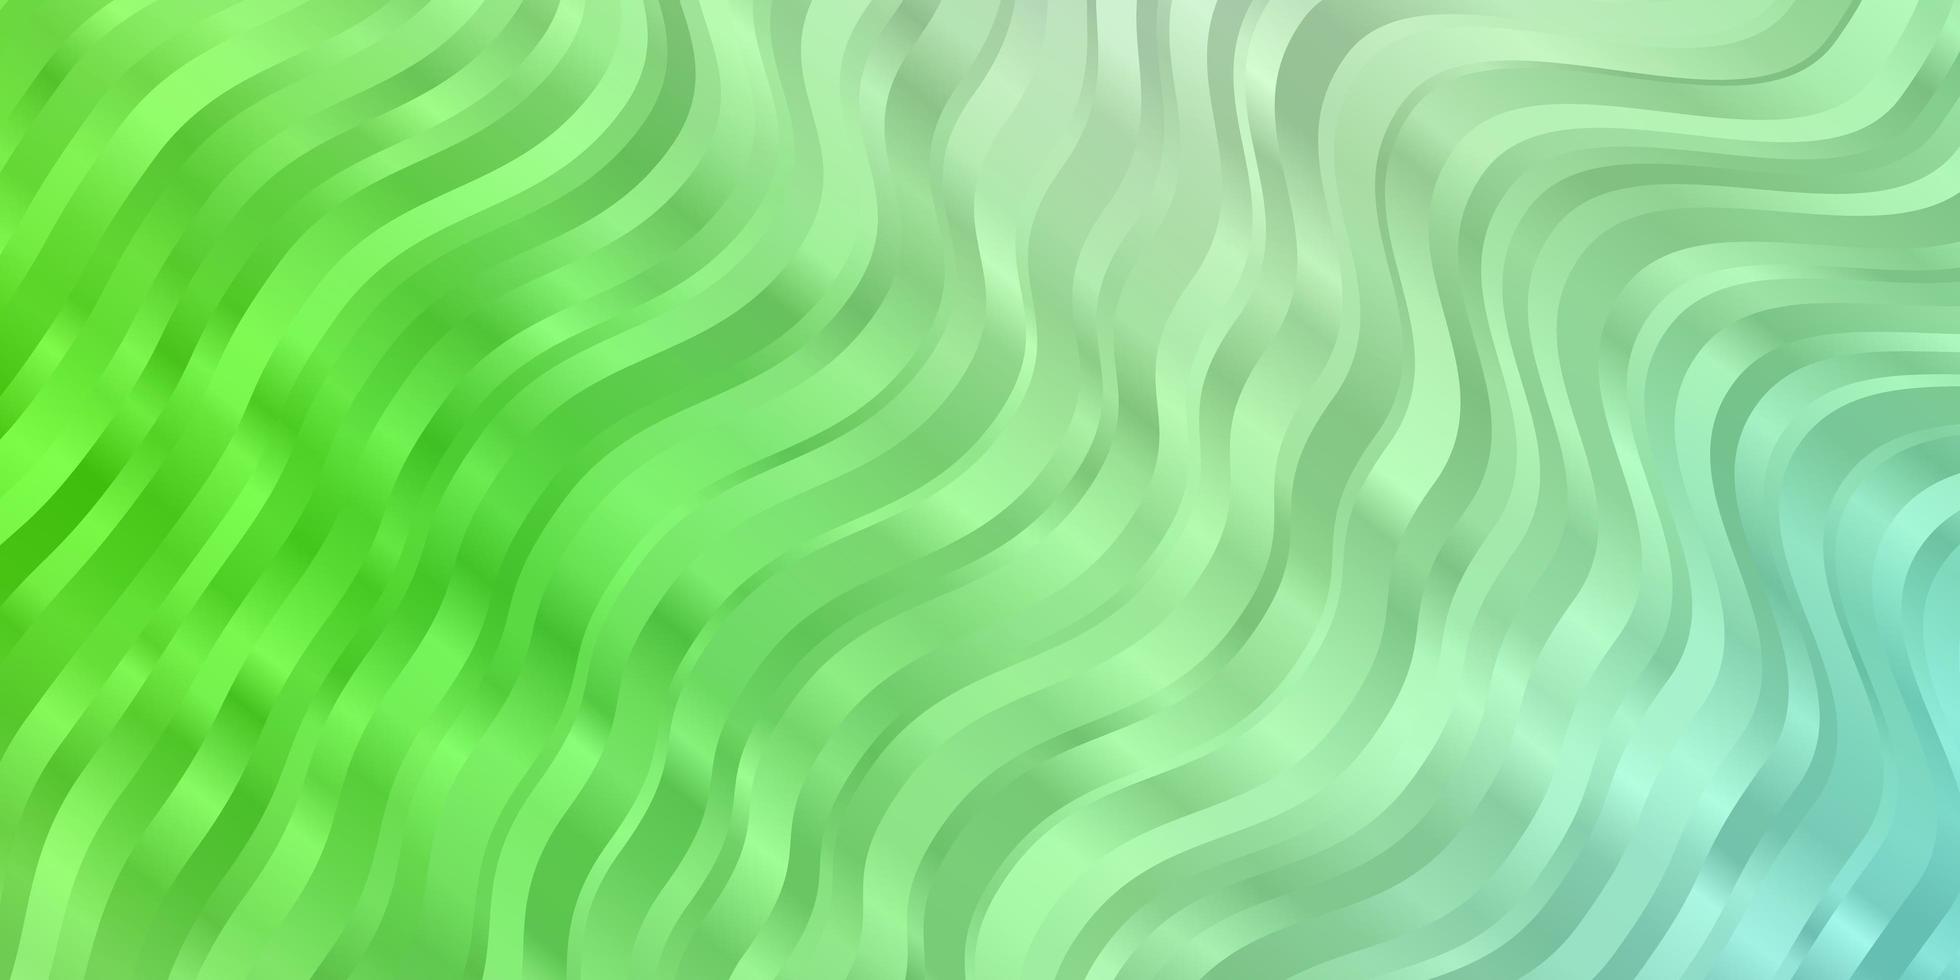 sfondo vettoriale verde chiaro con curve.